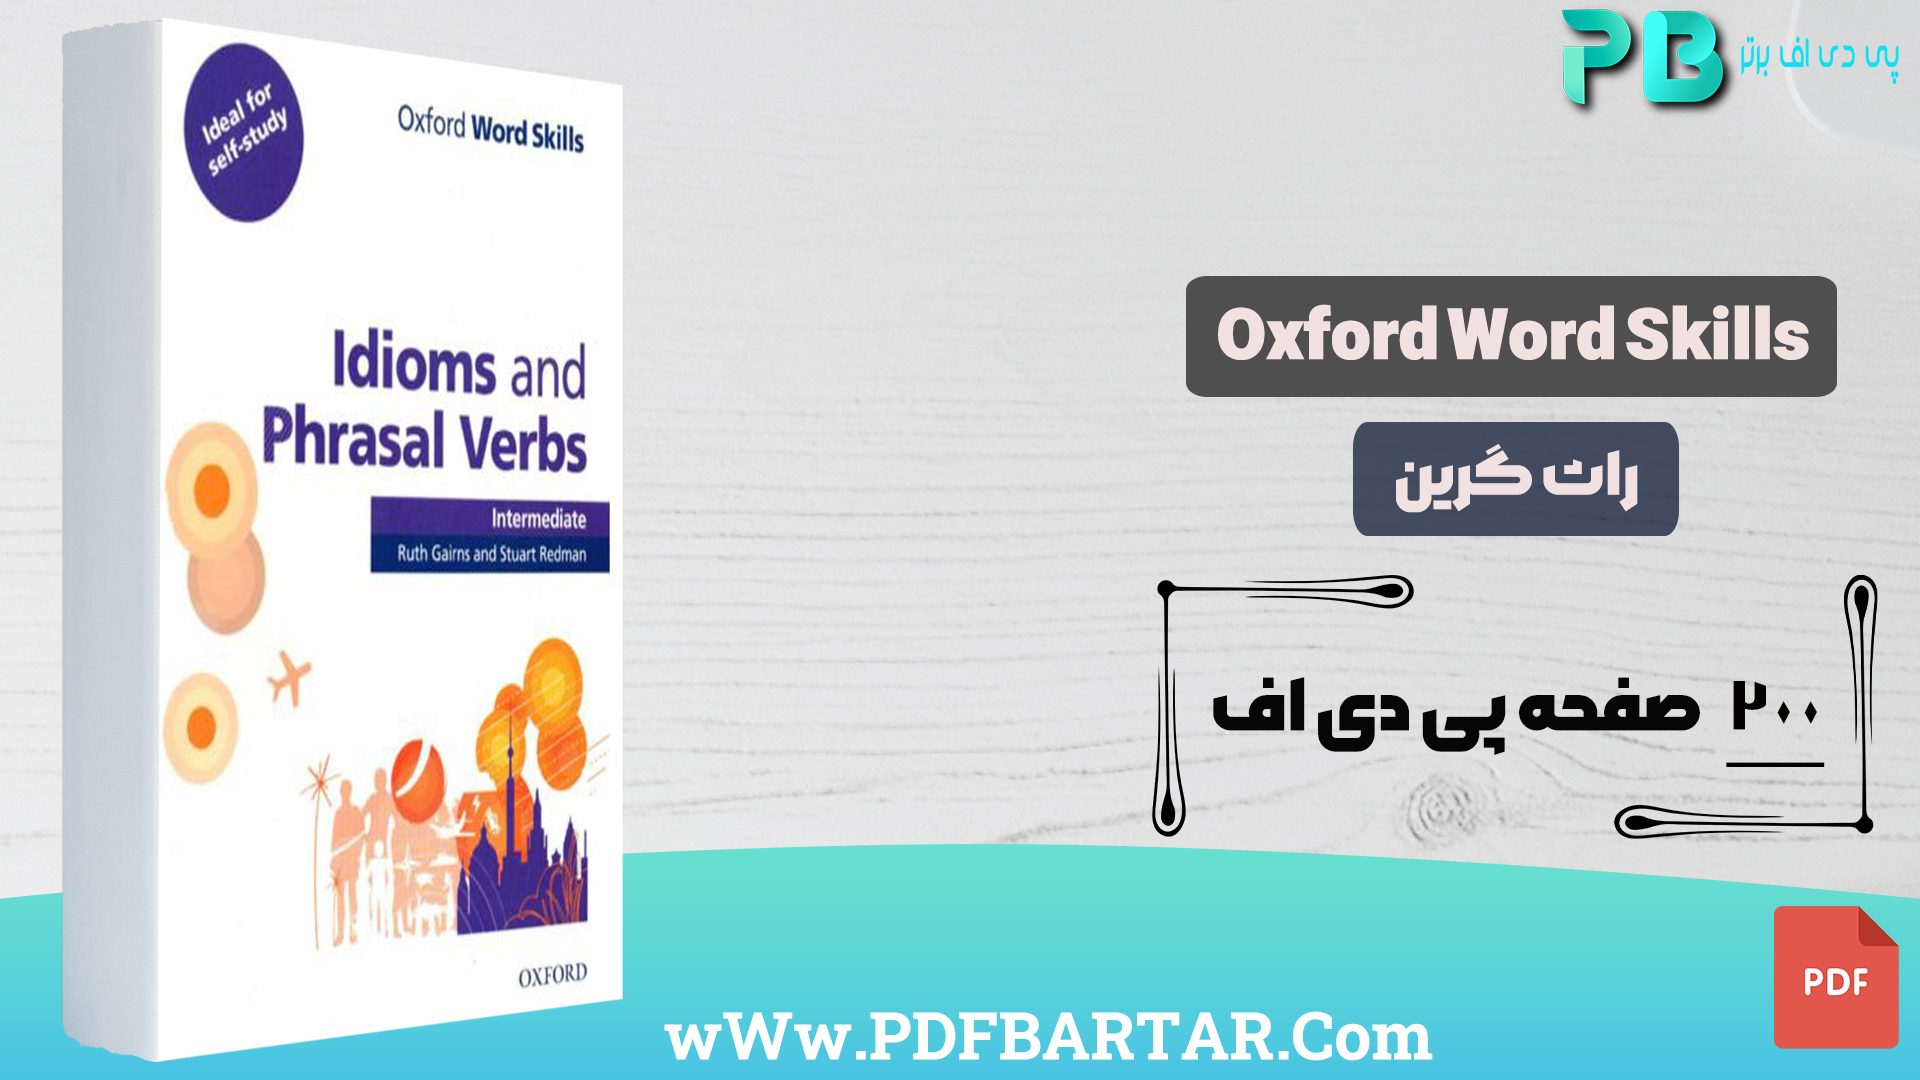 دانلود پی دی اف کتاب Oxford Word Skills راث گرین PDF- پی دی اف برتر